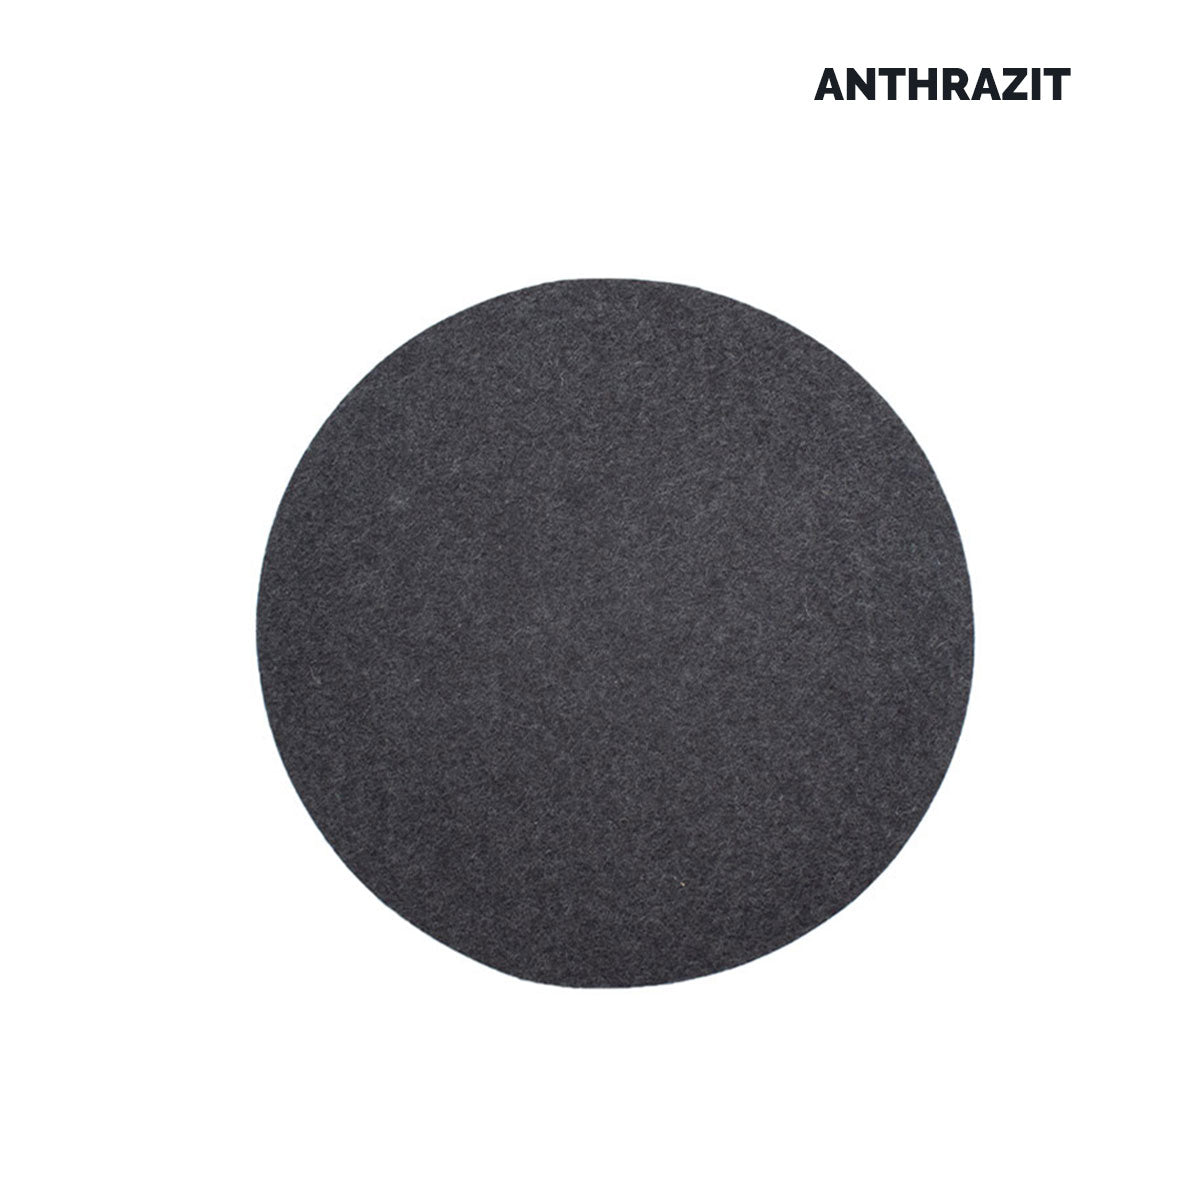 Sitz- oder Tisch-Auflage 'Color' | rund | aus 100% Schafwolle | in vielen Farben | Durchmesser 34 cm | Materialstärke 5 mm | Made in Germany